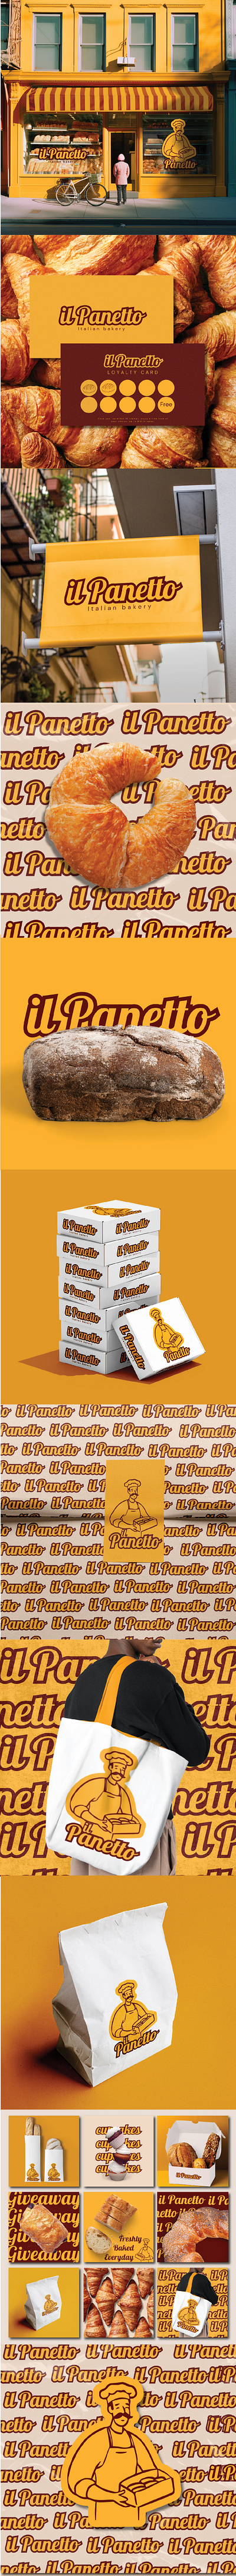 il Panetto: italian bakery - Branding 3d bakery branding graphic design illustration logo packaging